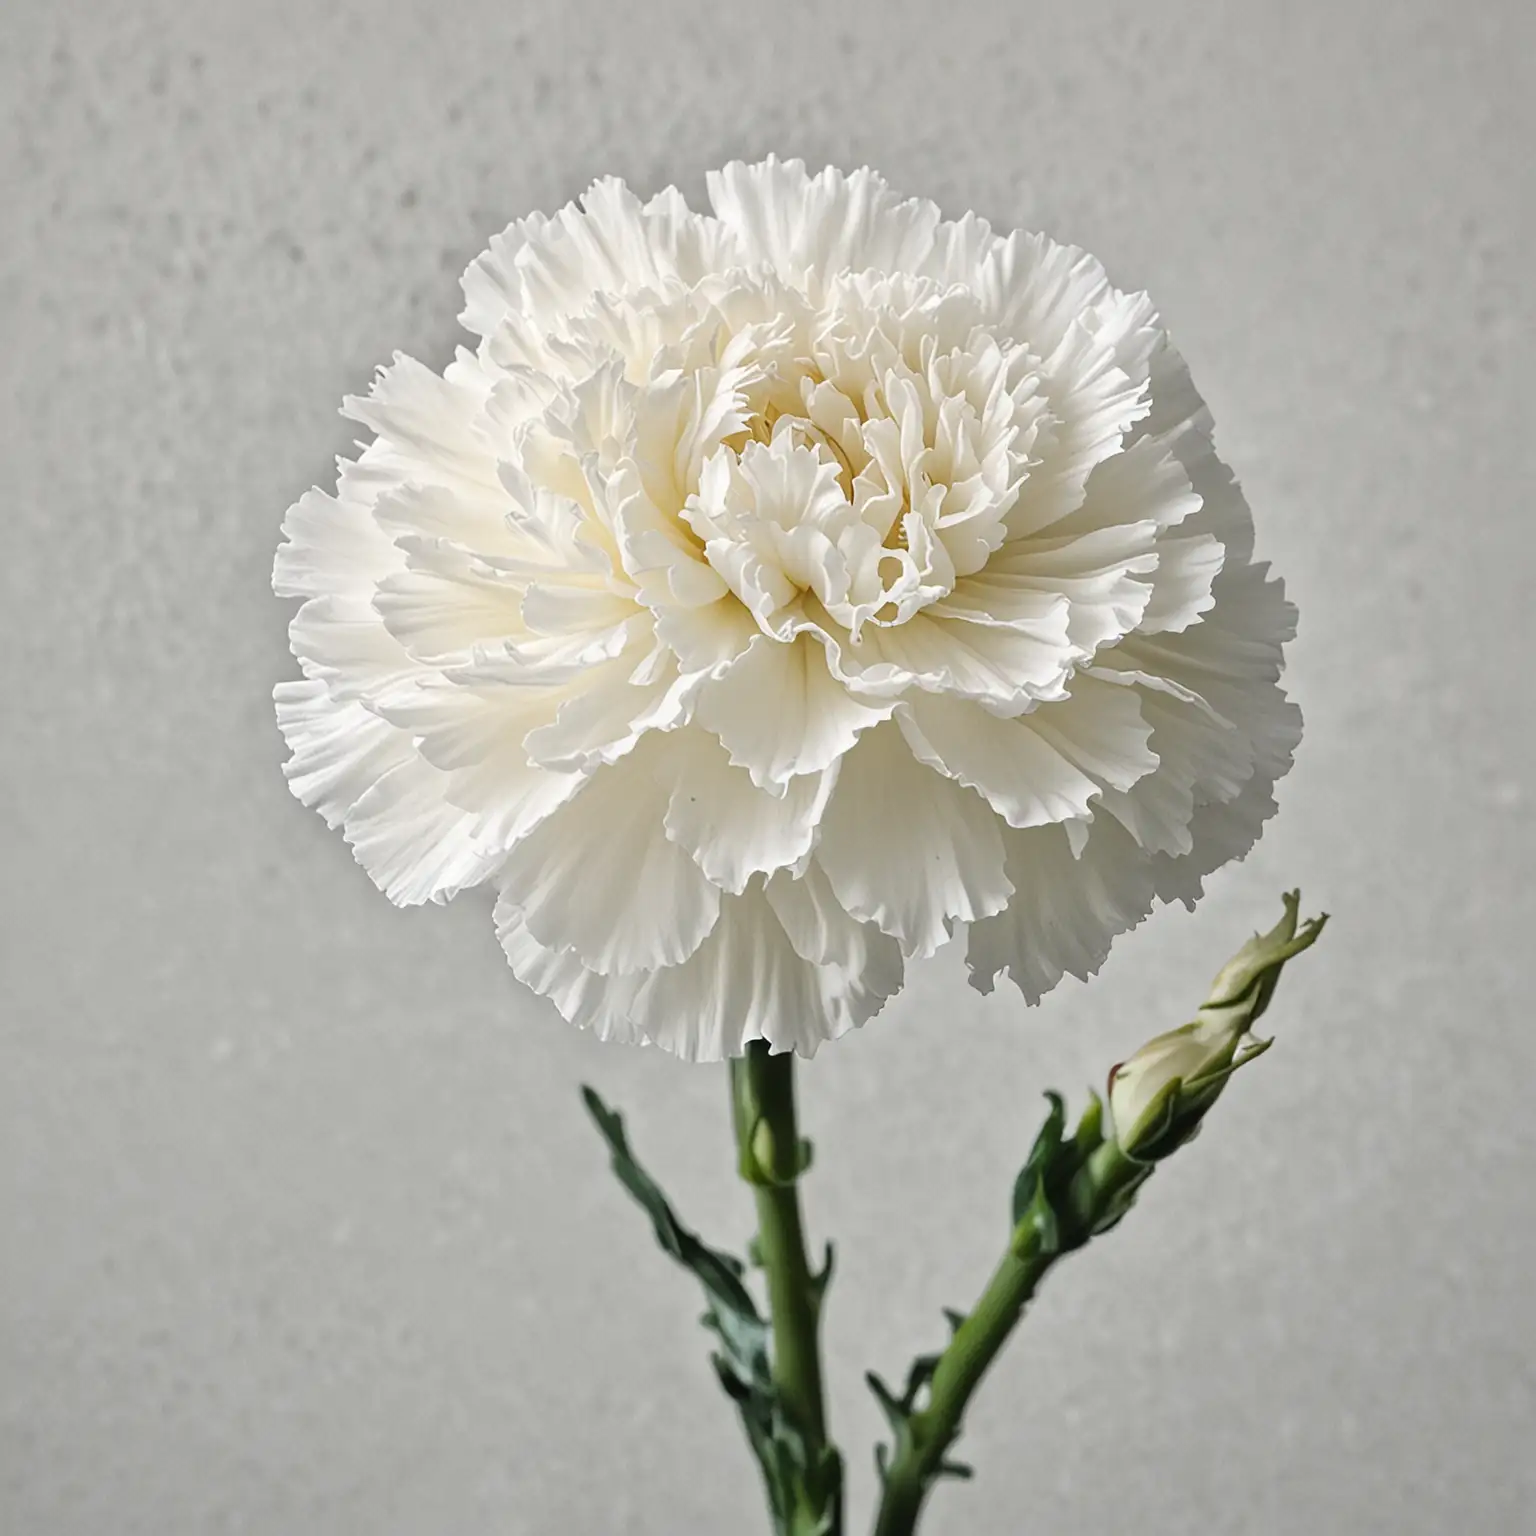 Elegant White Carnation Flower Blossoming in Soft Light